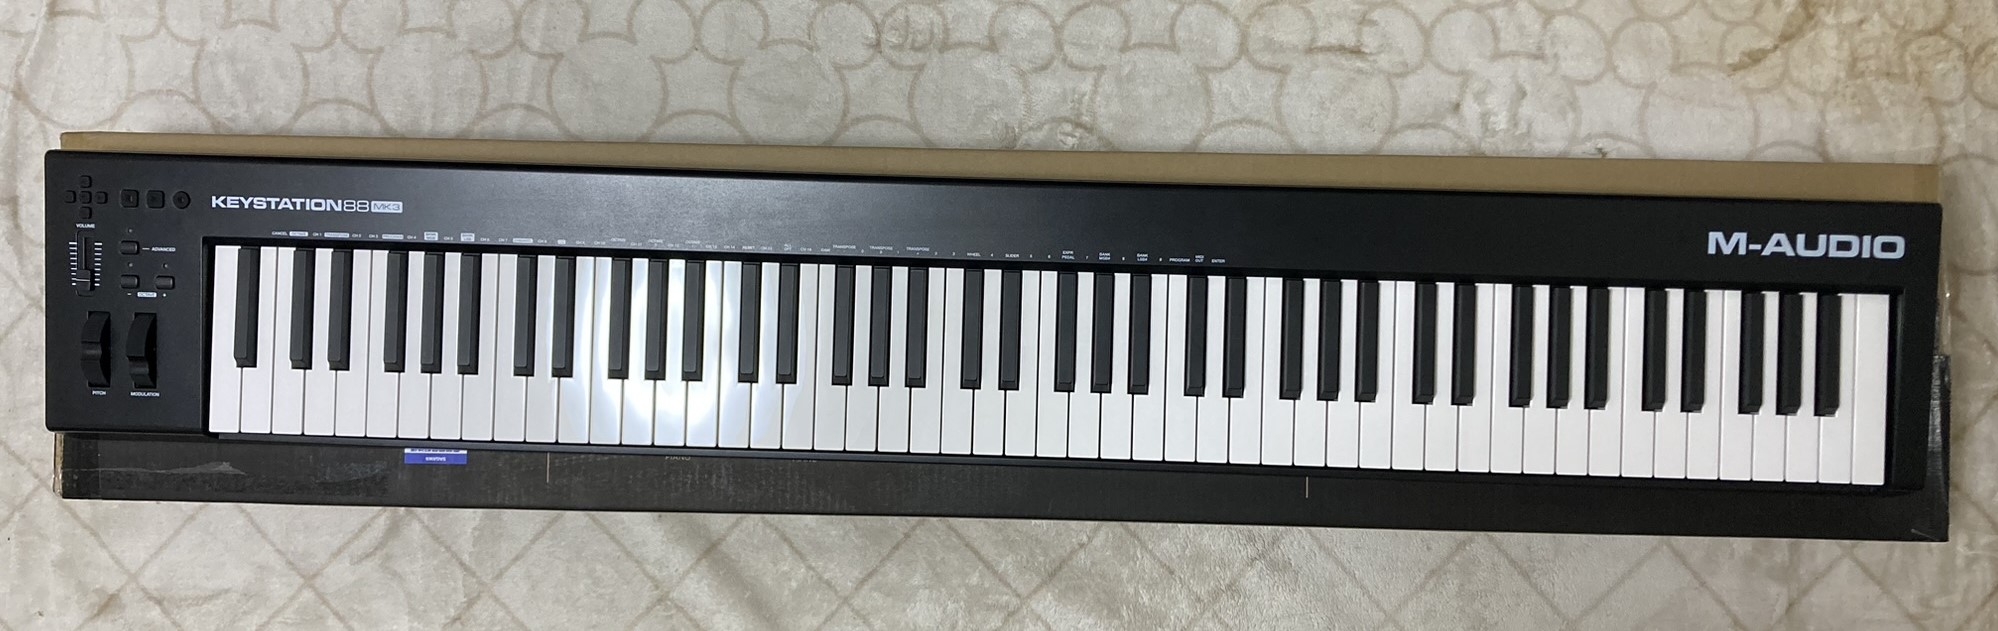 新品です未開封ですM-Audio Keystation 88 MK3 MIDI キーボード88鍵盤